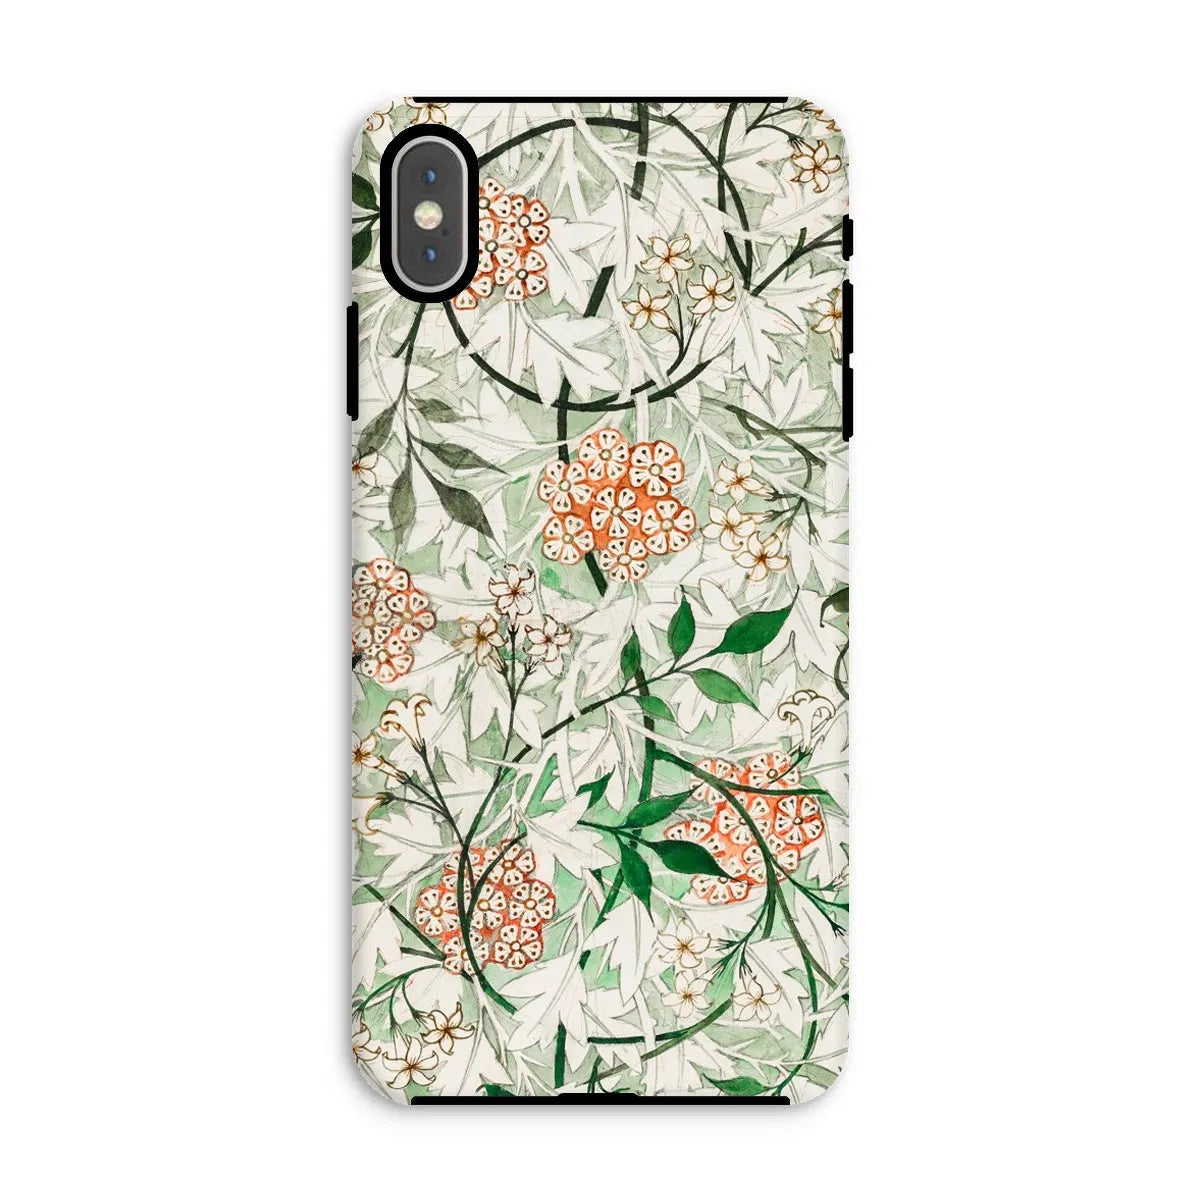 Jasmine Floral Aesthetic Art Phone Case - William Morris - Iphone Xs Max / Matte - Mobile Phone Cases - Aesthetic Art